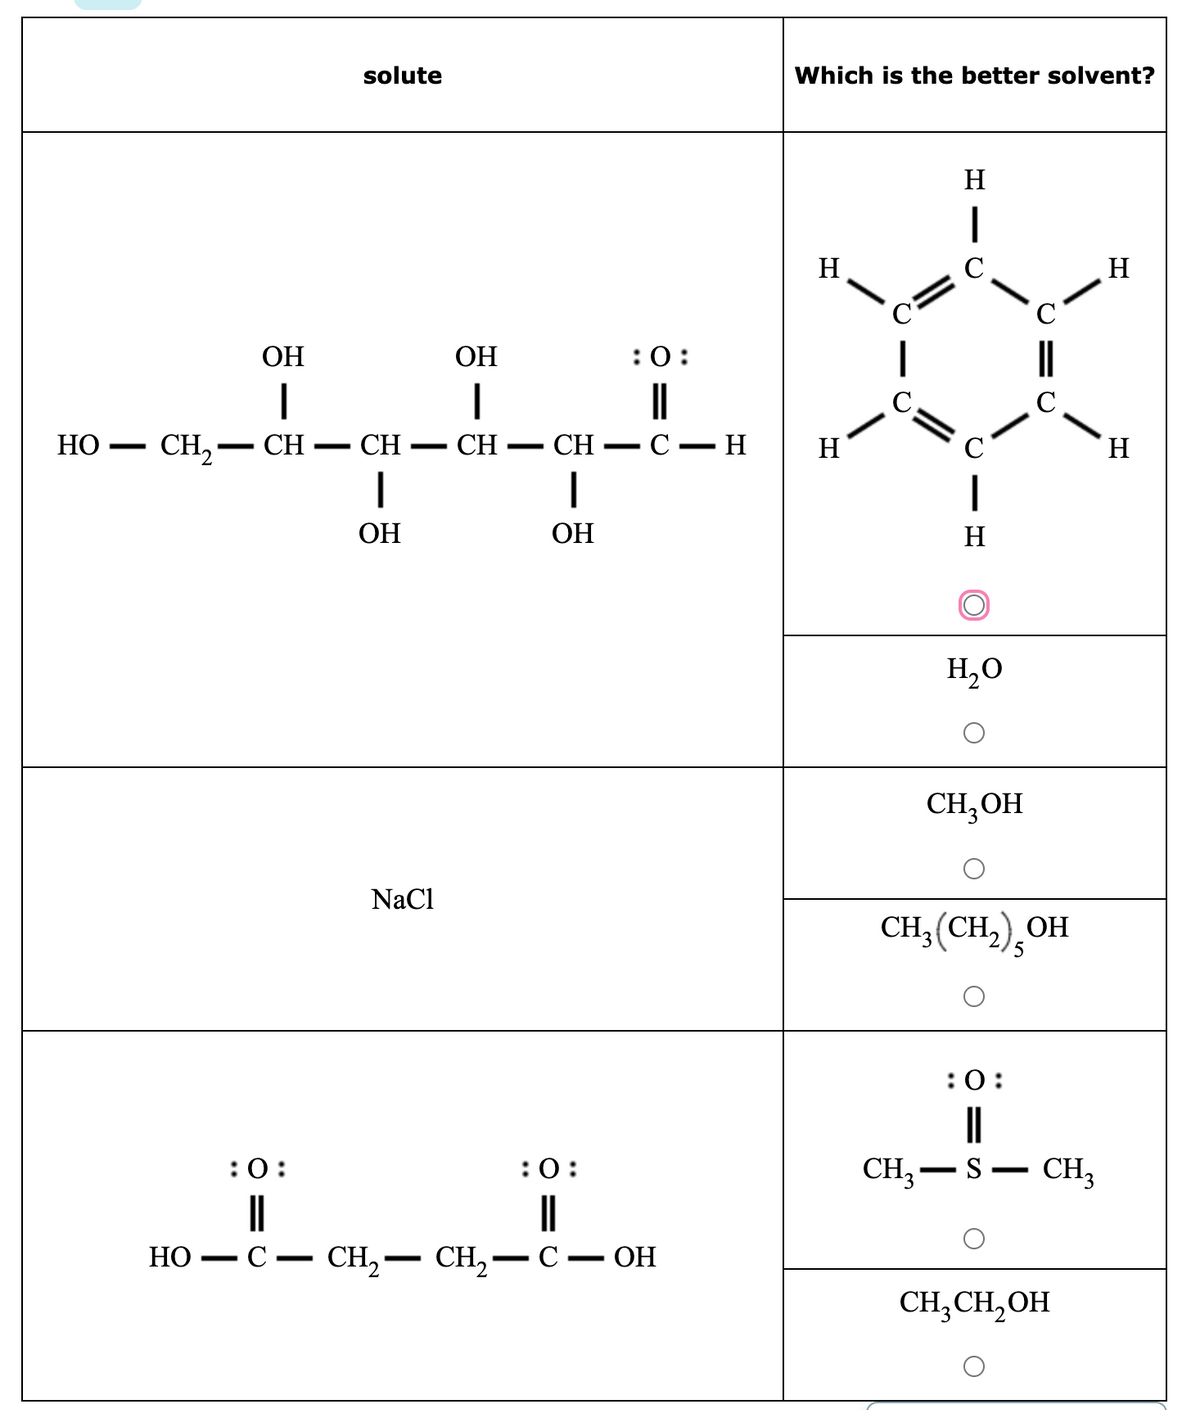 HO
-
CH,
НО
-
ОН
I
CH_
-
:0:
solute
CH
ОН
-
NaCl
ОН
I
CH
-
CH
ОН
-
:0:
||
с
:0:
||
-
· C — CH2 — CH2 — C — ОН
н
Which is the better solvent?
Н
н
C
|
H
1
C
C
1
Н
CH3-
H2O
CH₂OH
C
|||
C
CH3(CH2), ОН
:0:
||
S
о-
CH3
CH₂CH₂OH
Н
Н